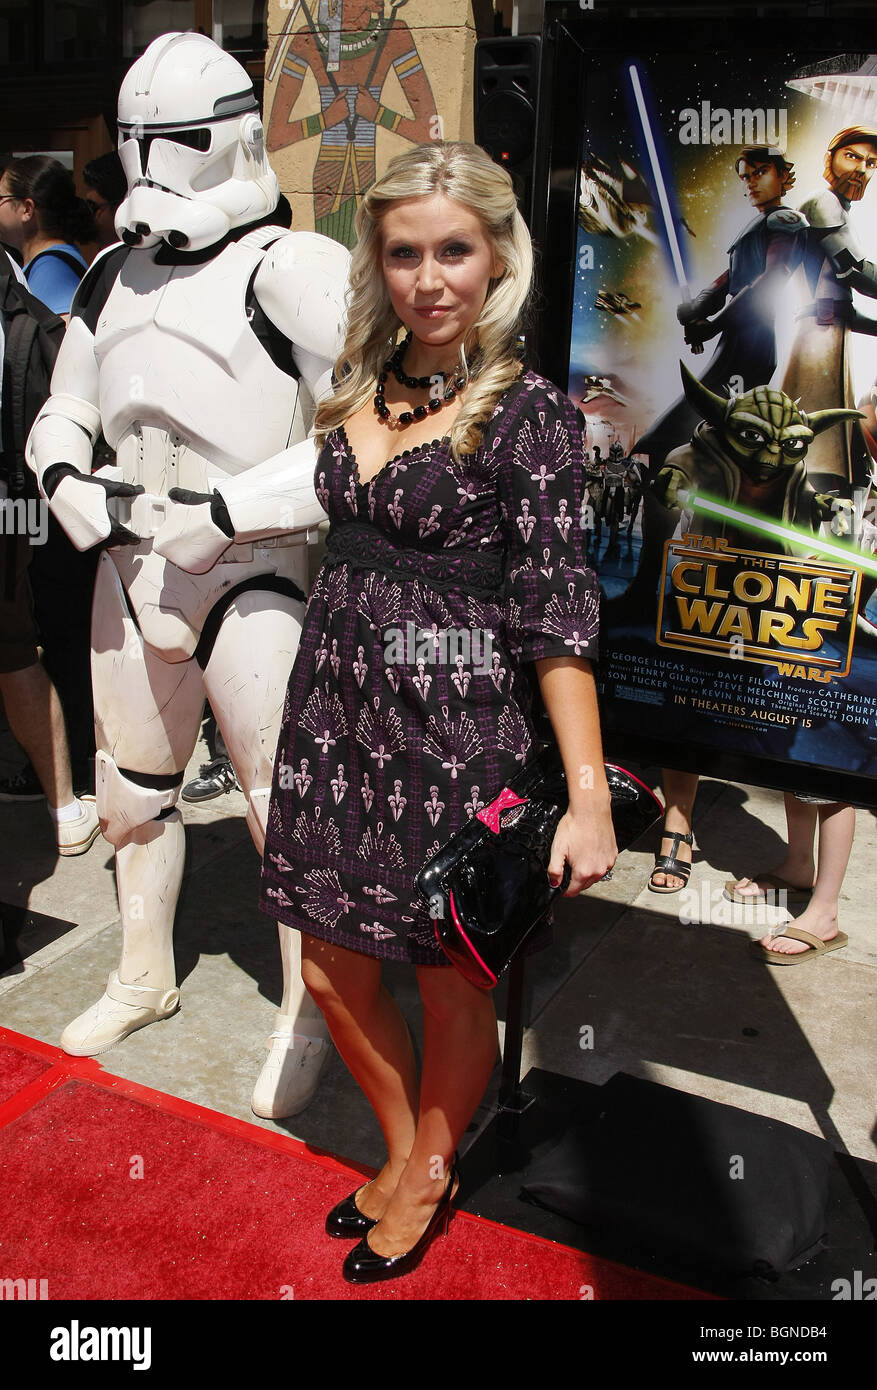 Ashley Eckstein Star Wars Clone Wars